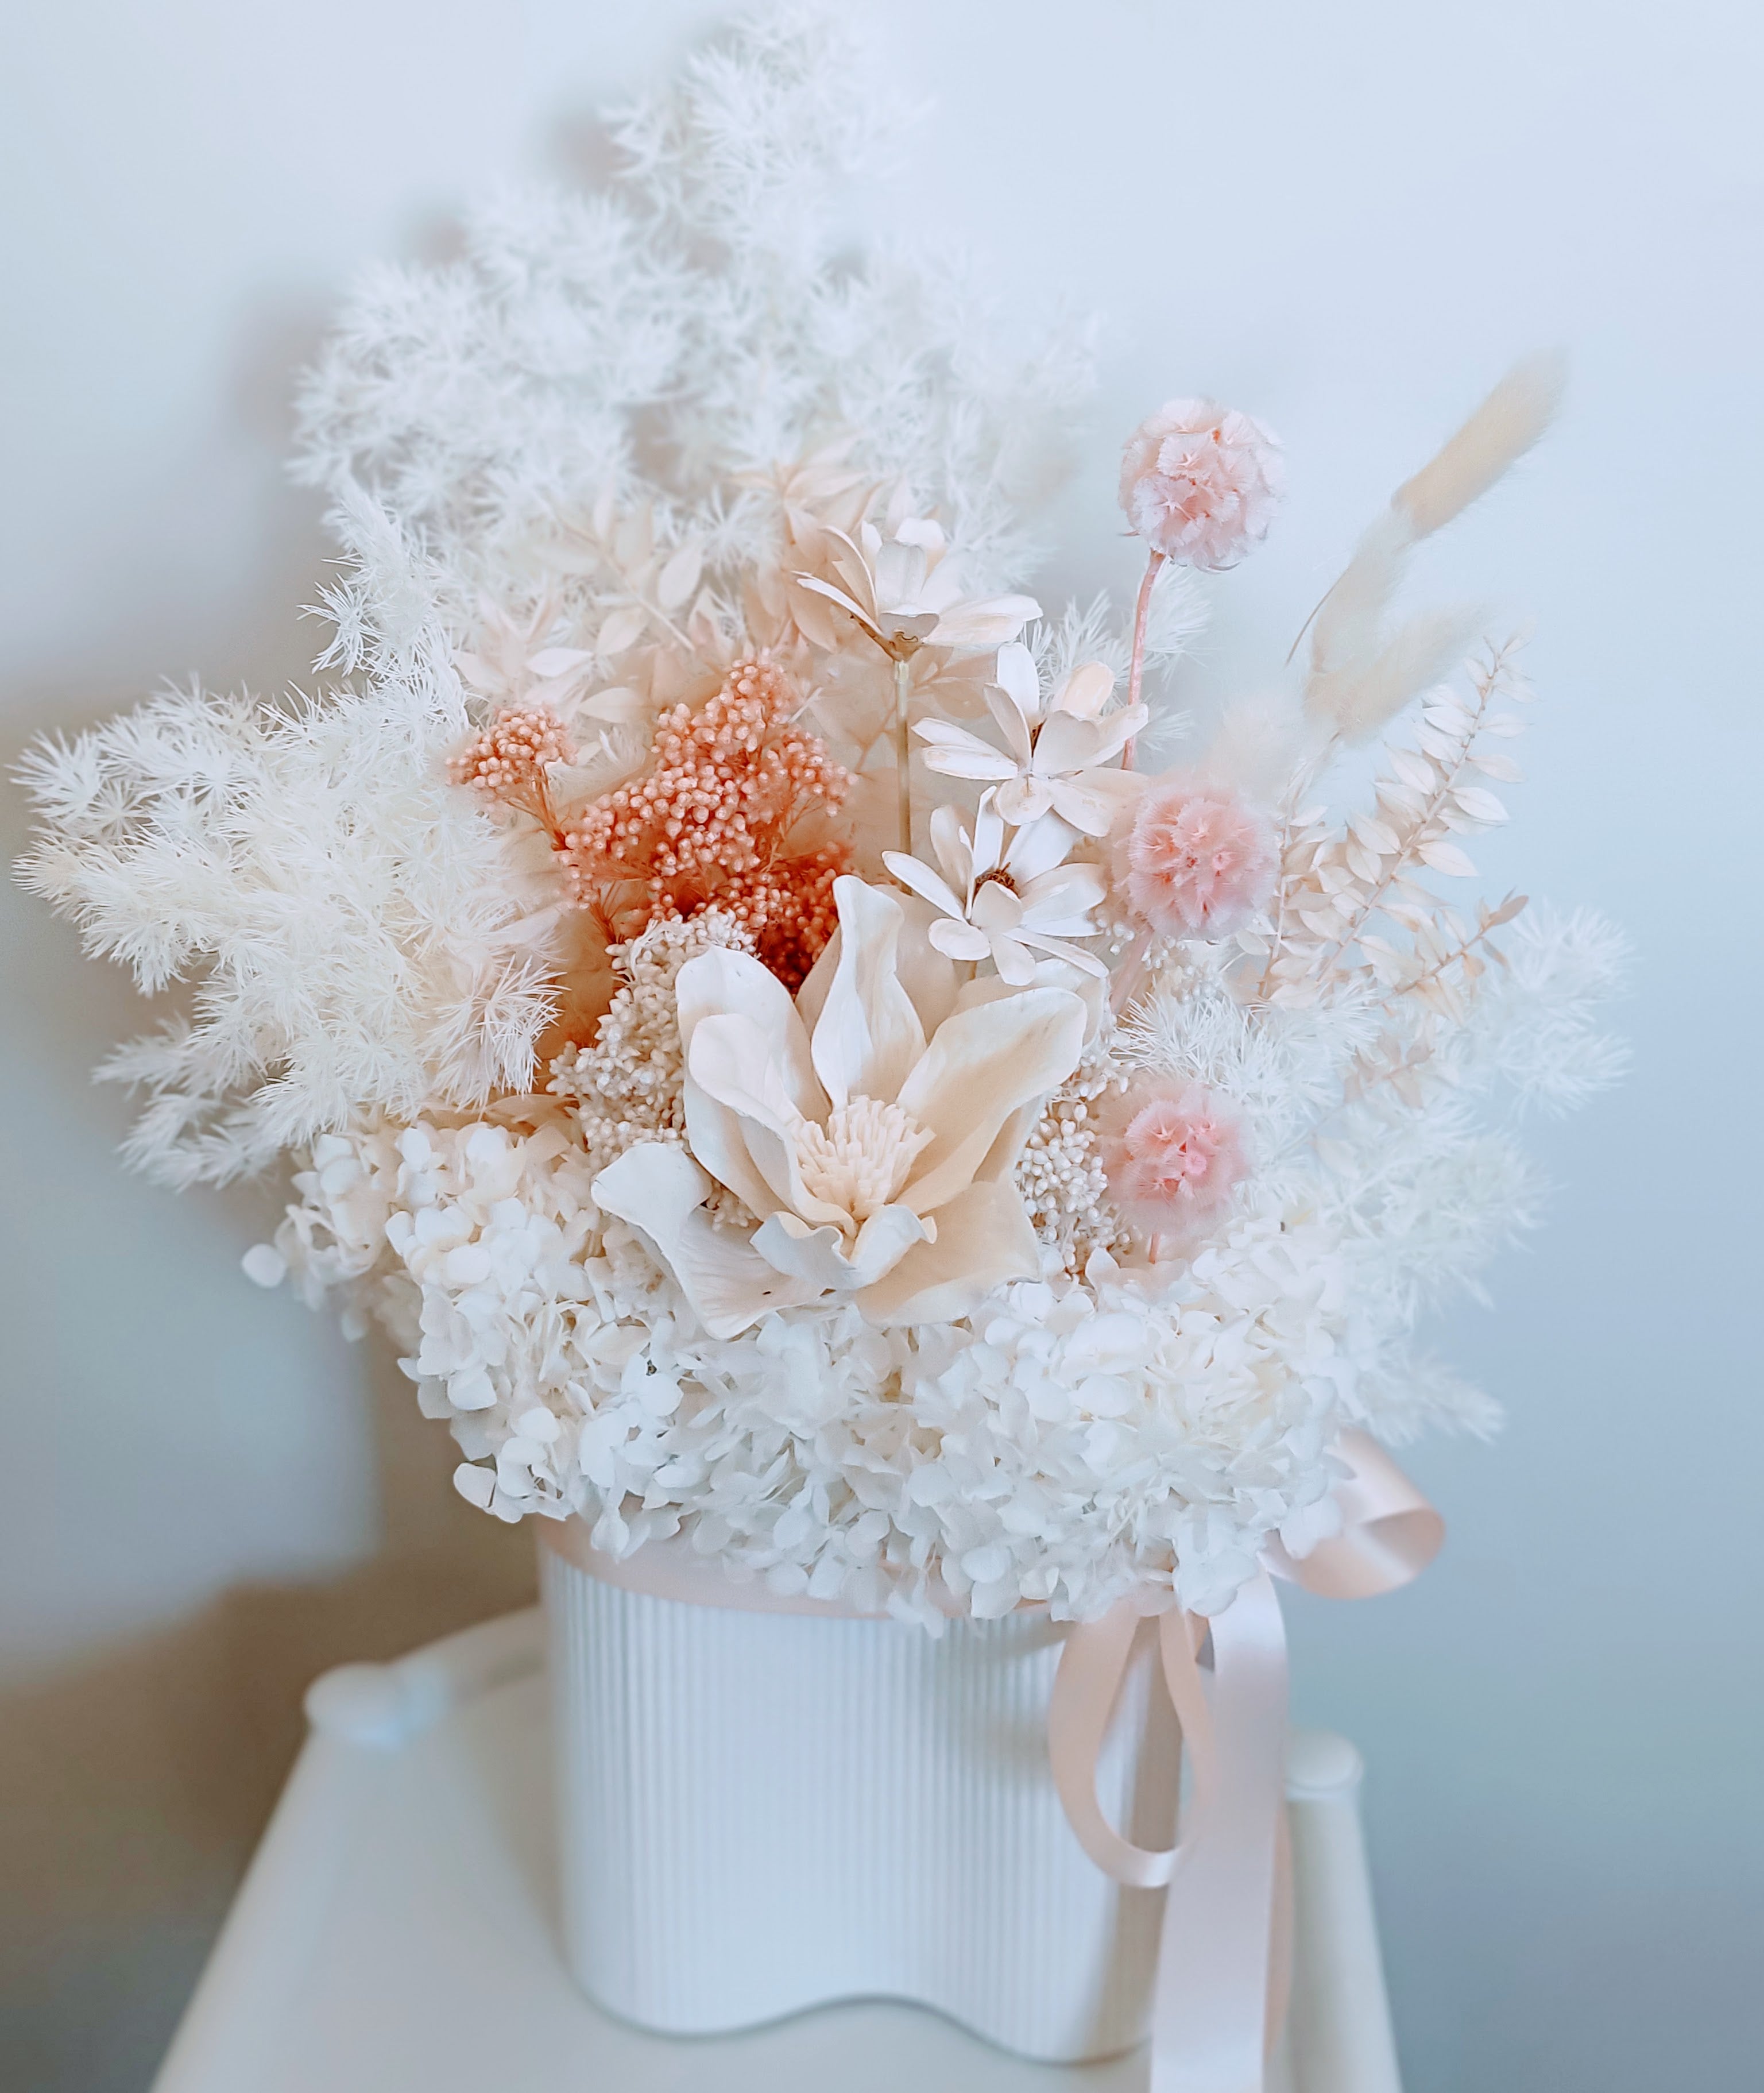 Jolene - Modern Elegant White & Blush Everlasting Dried Arrangement in White Vase